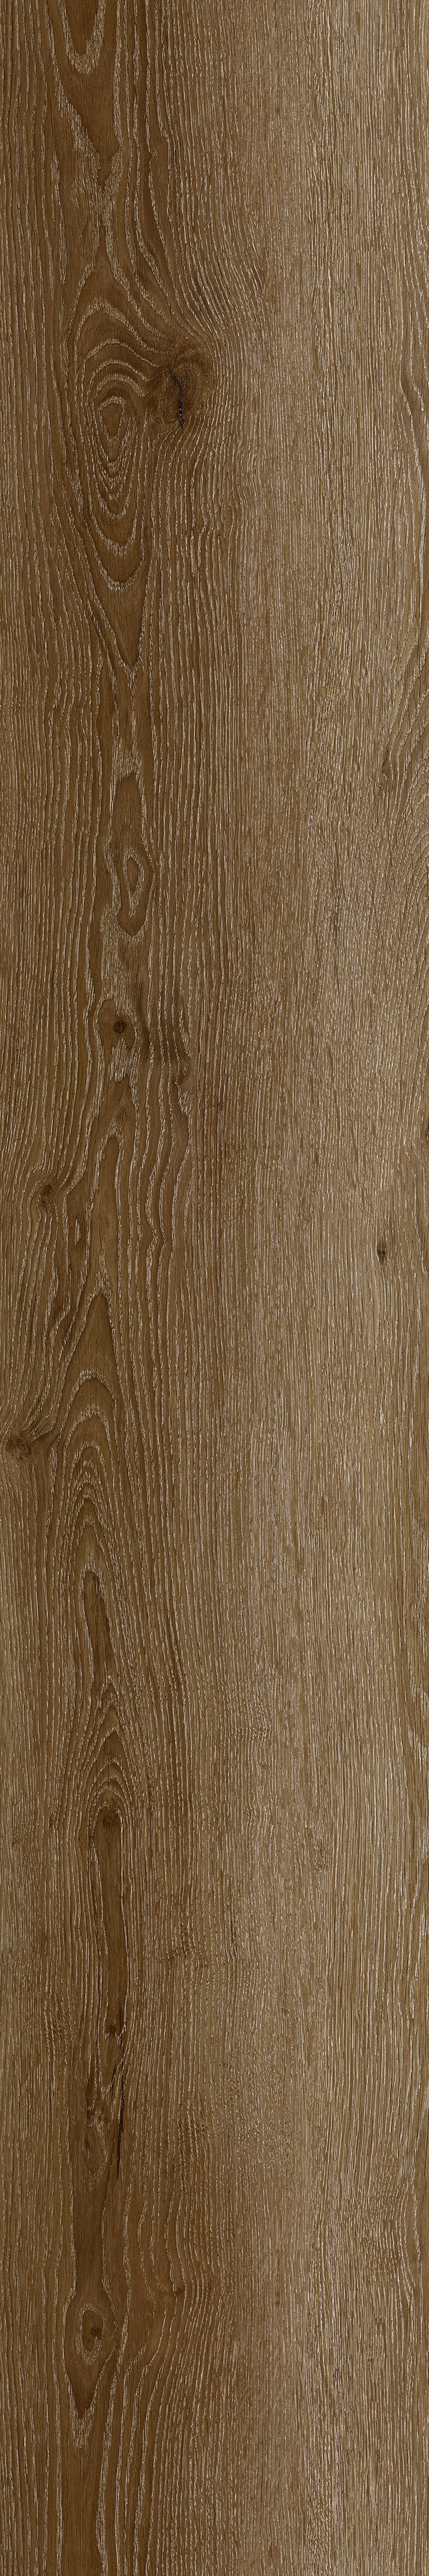 Rustic Wood from Impack Pratama